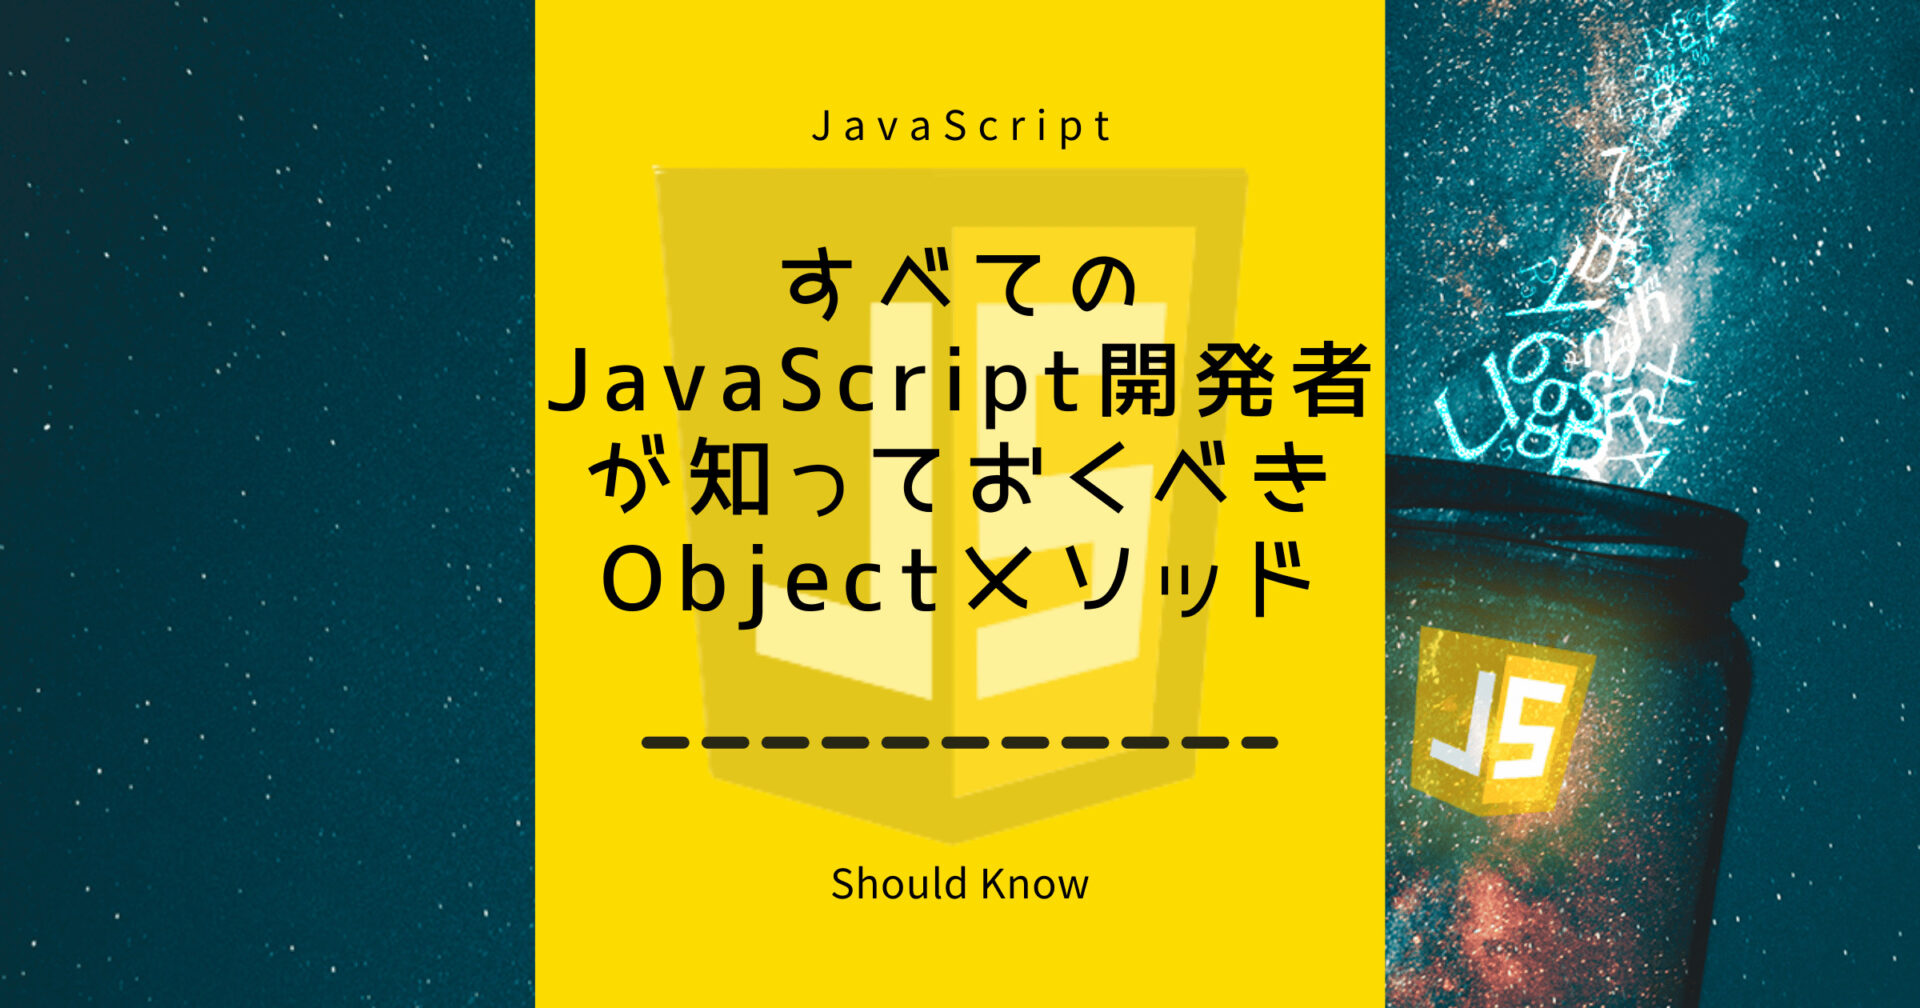 すべてのJavaScript開発者が知っておくべきObjectメソッド